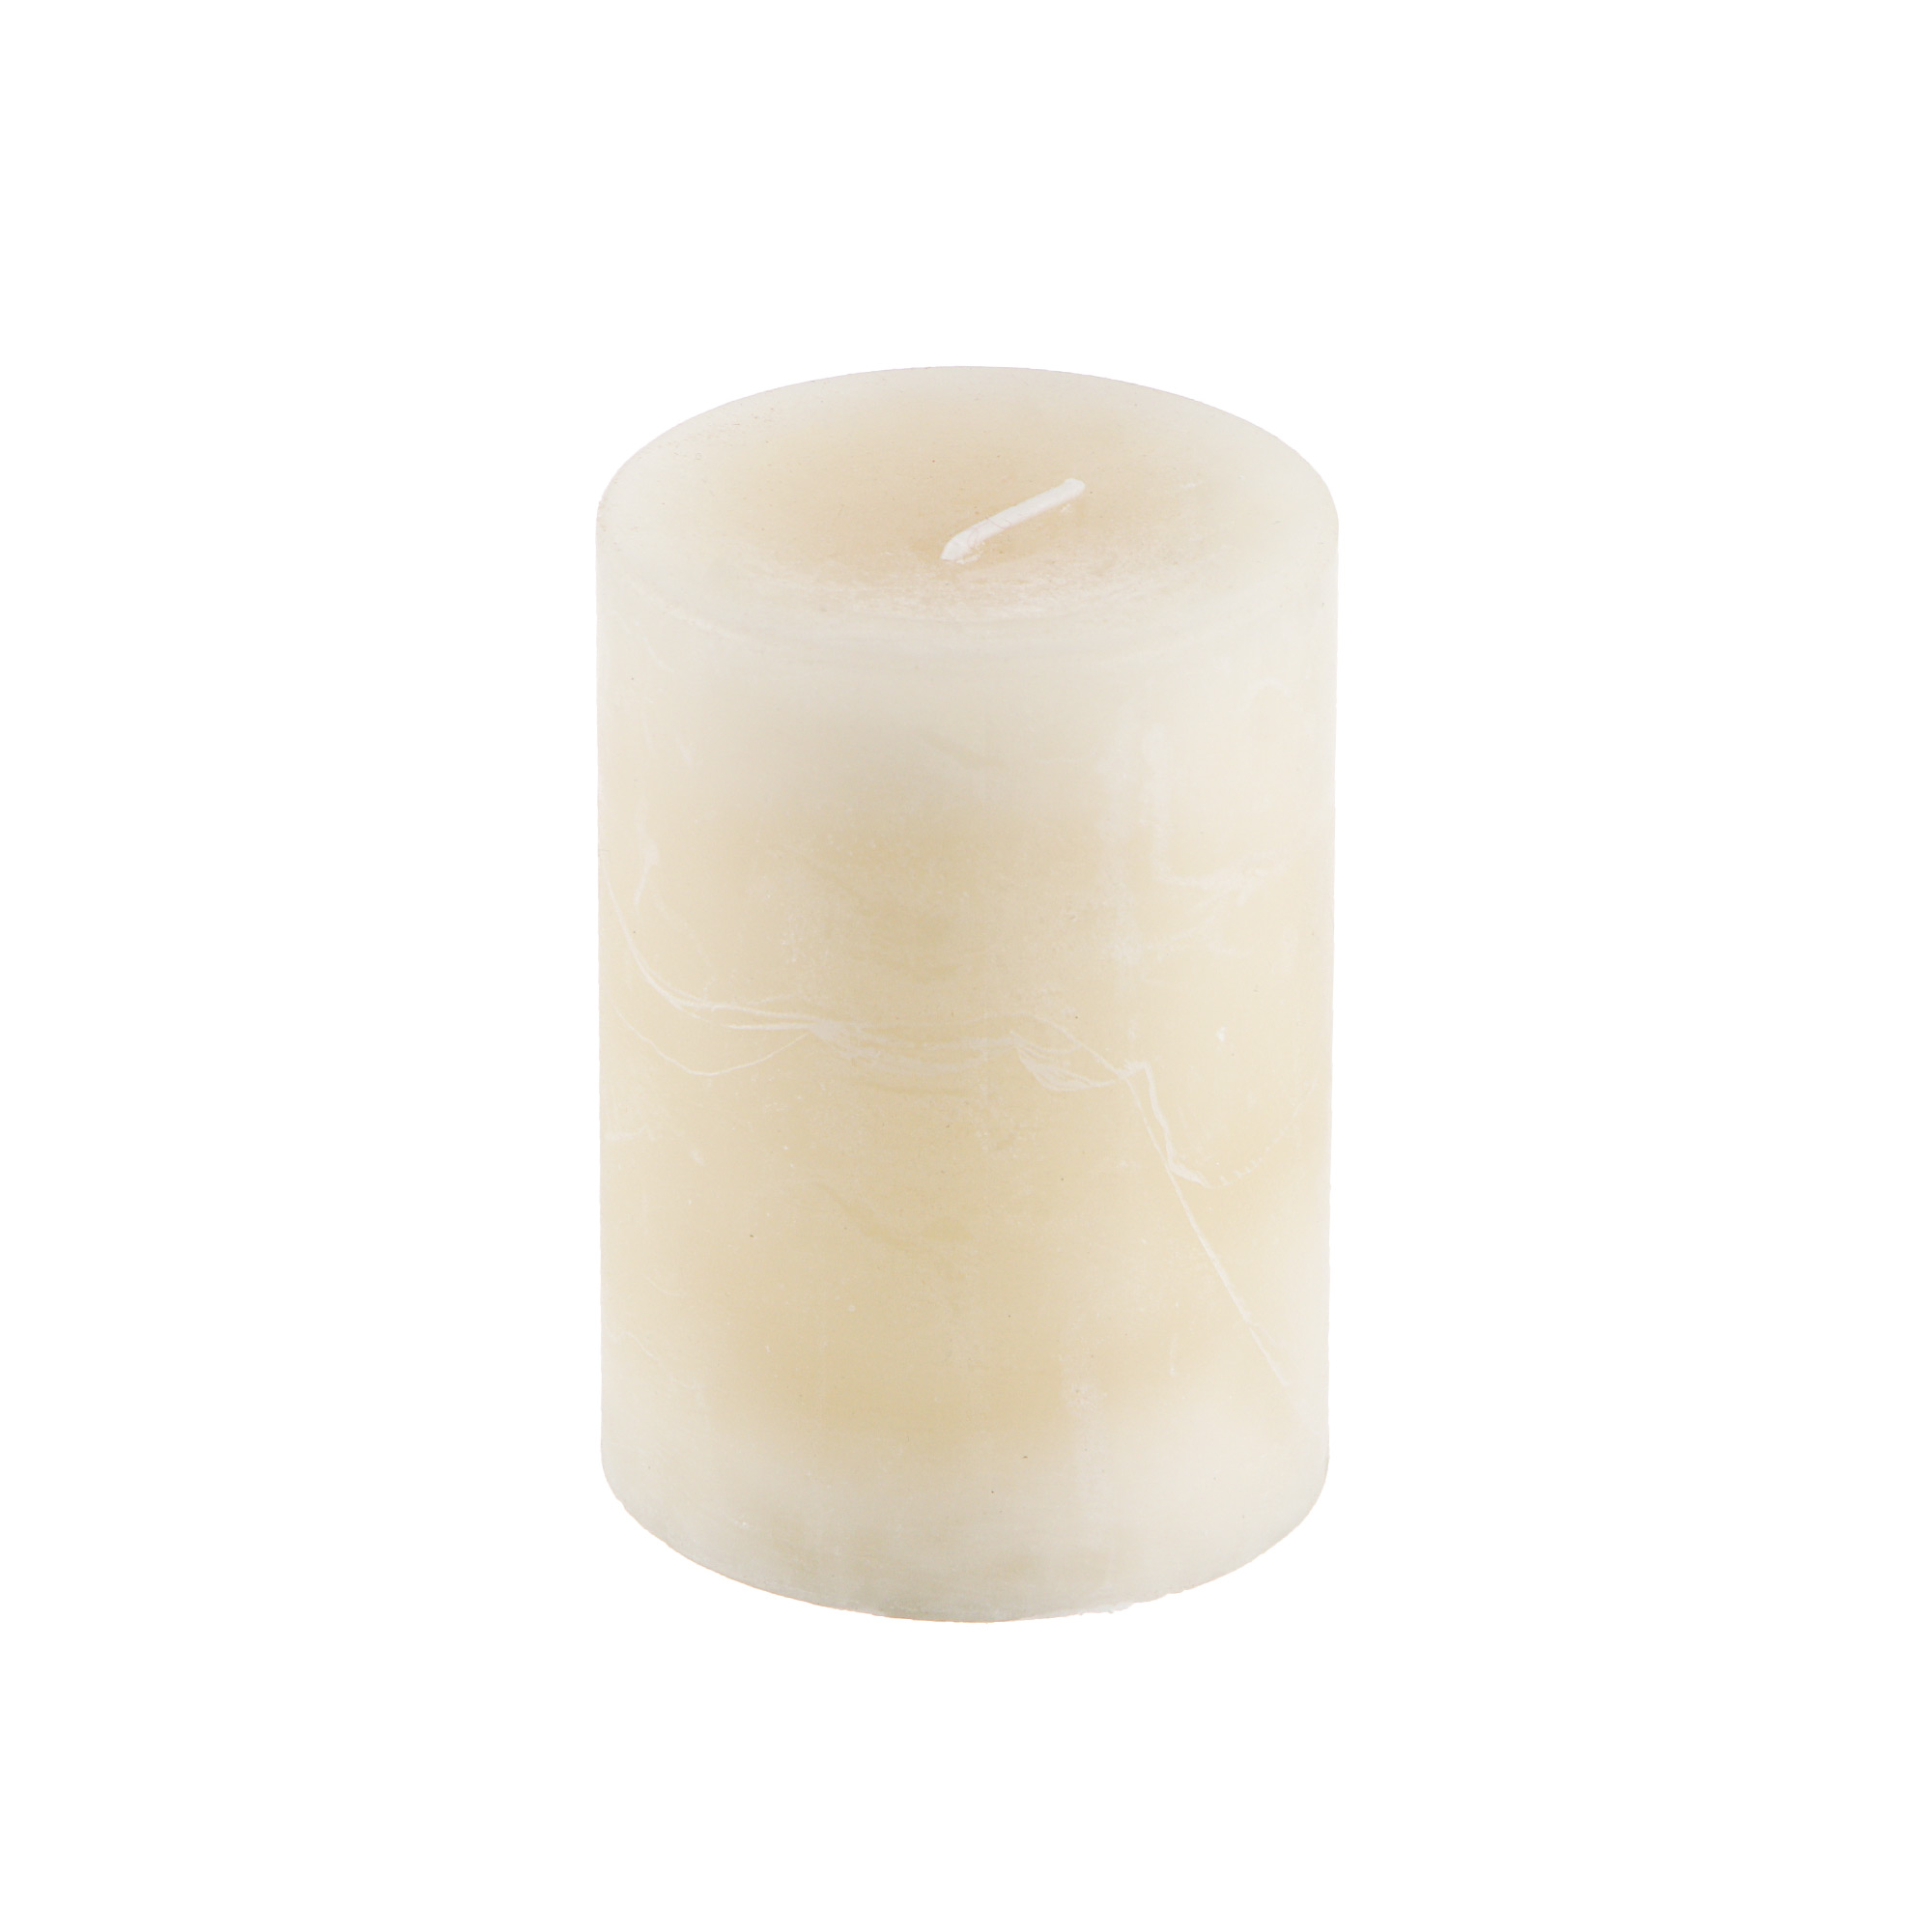 Свеча Sunford ароматическая ваниль 6.8х9.5 см свеча ароматическая sunford океан 6 8х15см голубой